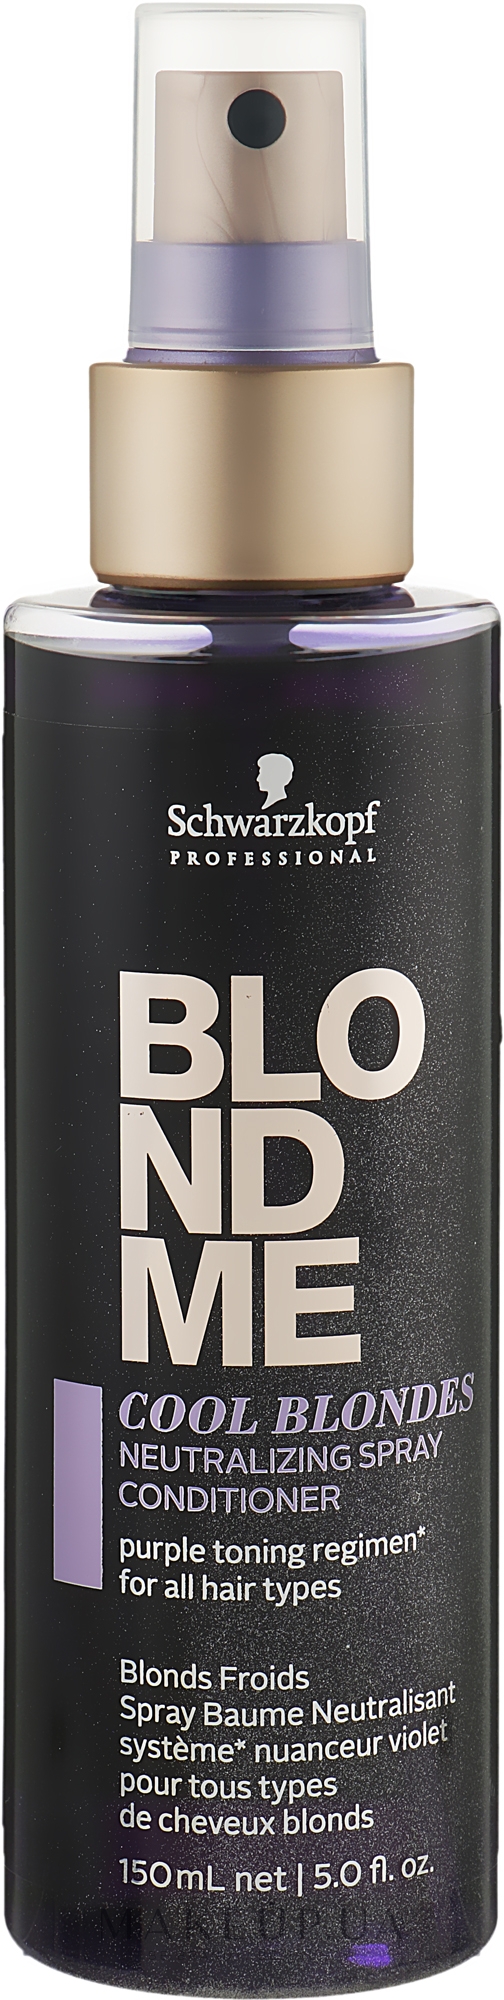 Нейтрализующий спрей-кондиционер для волос холодных оттенков - Schwarzkopf Professional Blondme Cool Blondes Neutralizing Spray Conditioner — фото 150ml